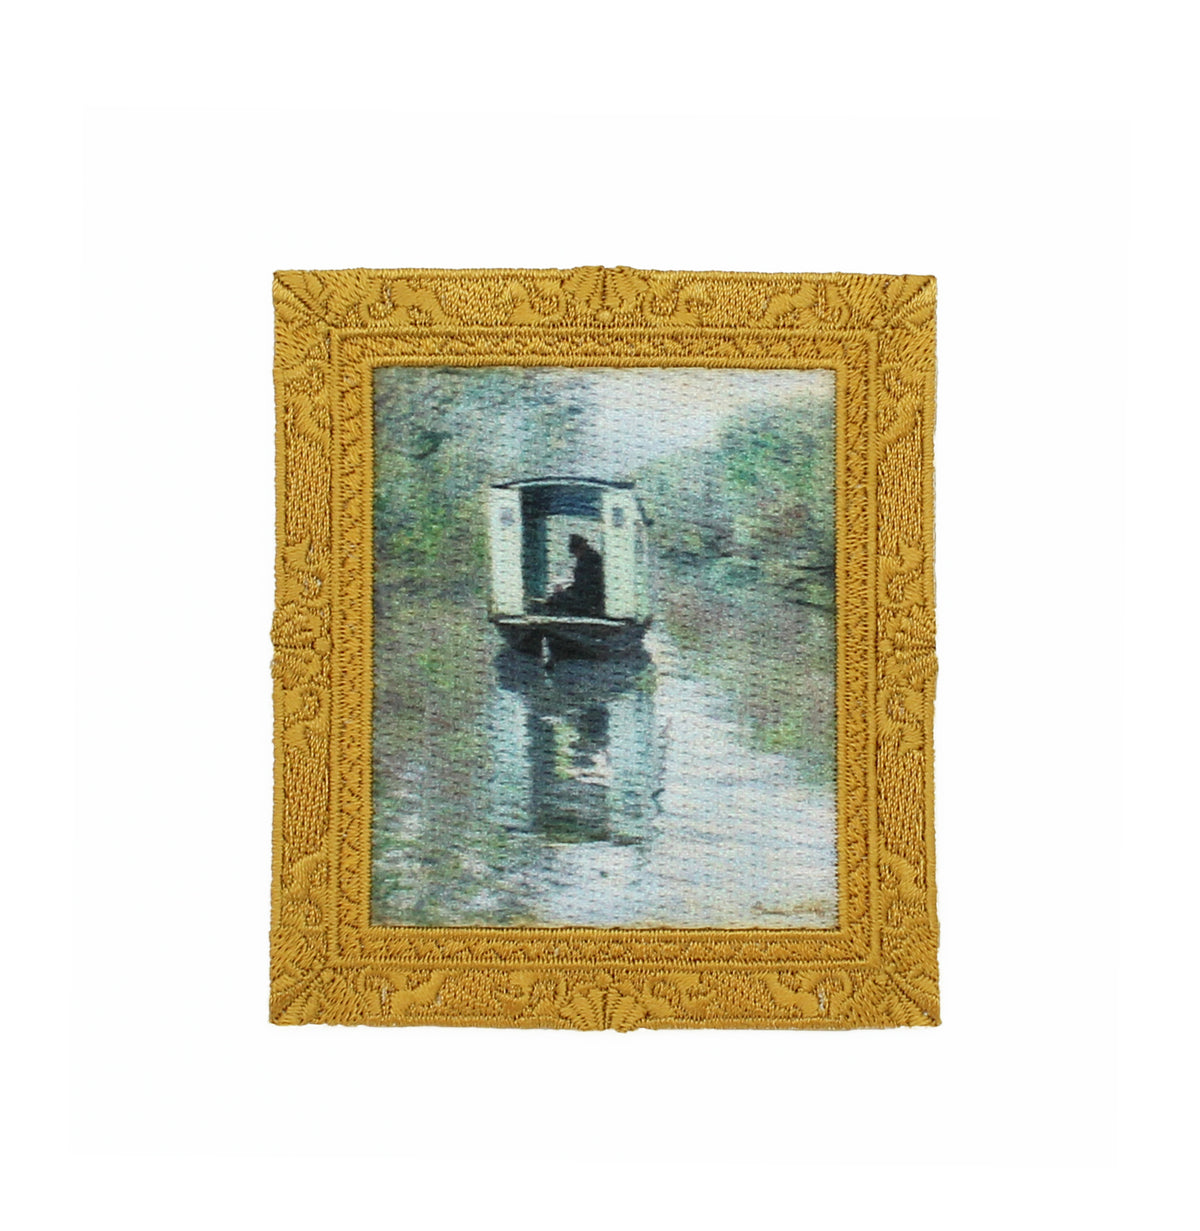 Monet &quot;Studio Boat&quot; artwork patch